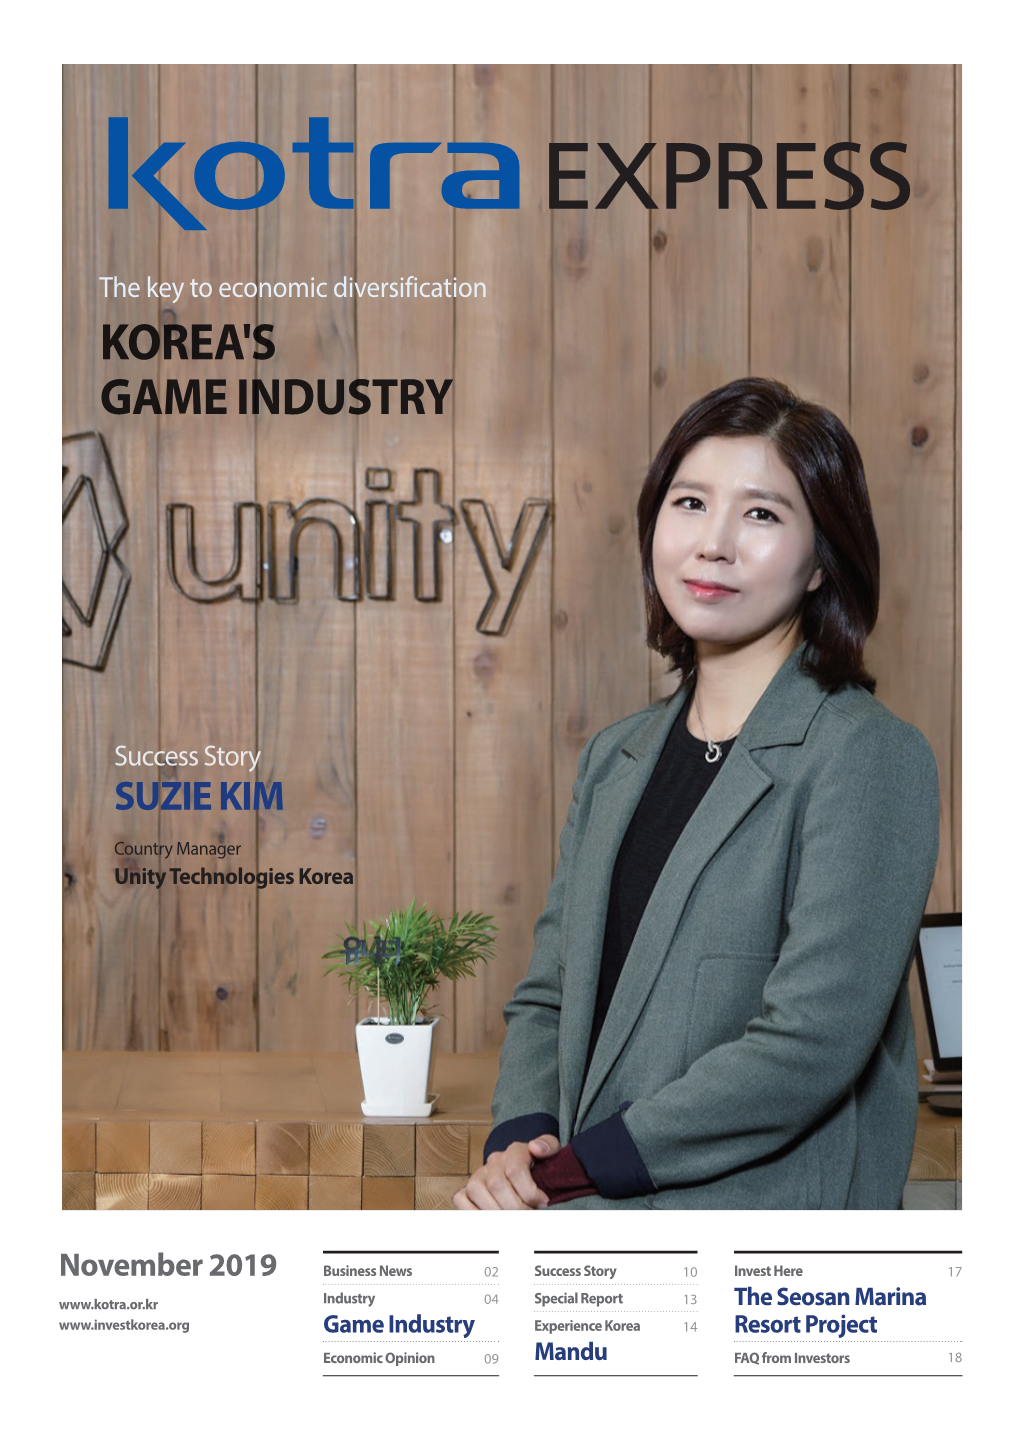 Korea's Game Industry